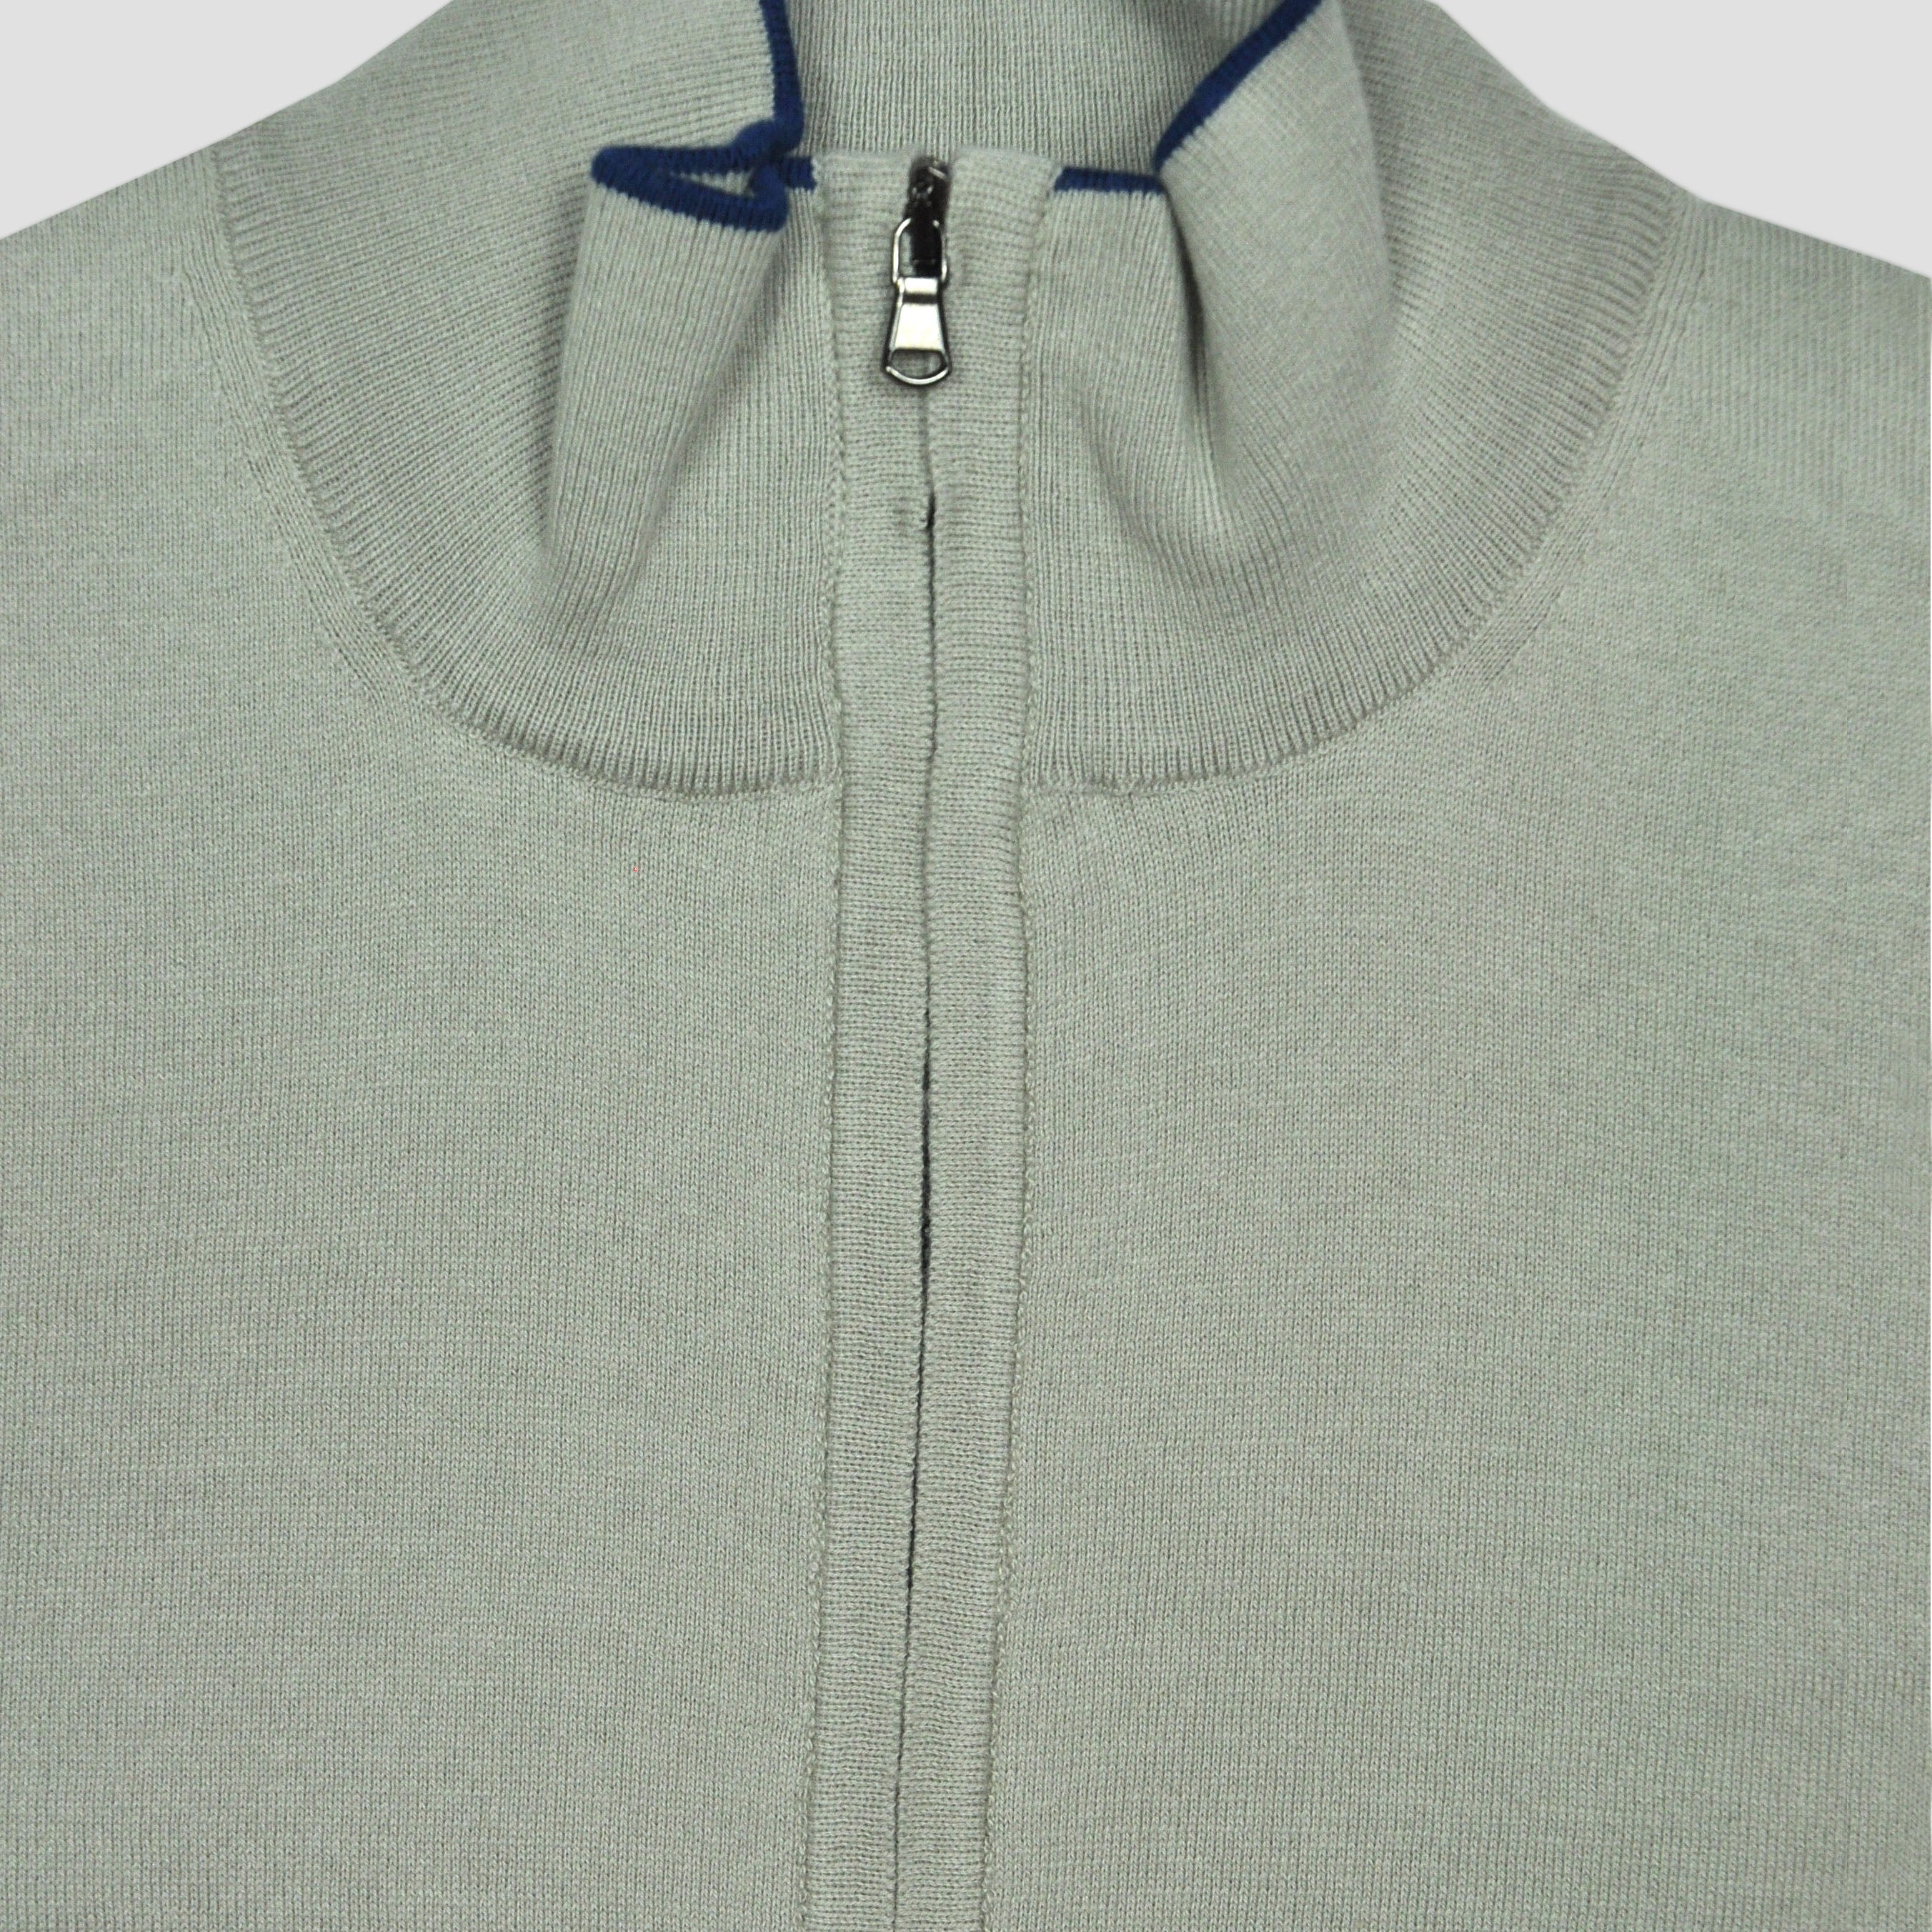 Fine Cotton Quarter Zip Collar in Grey with Blue Trim